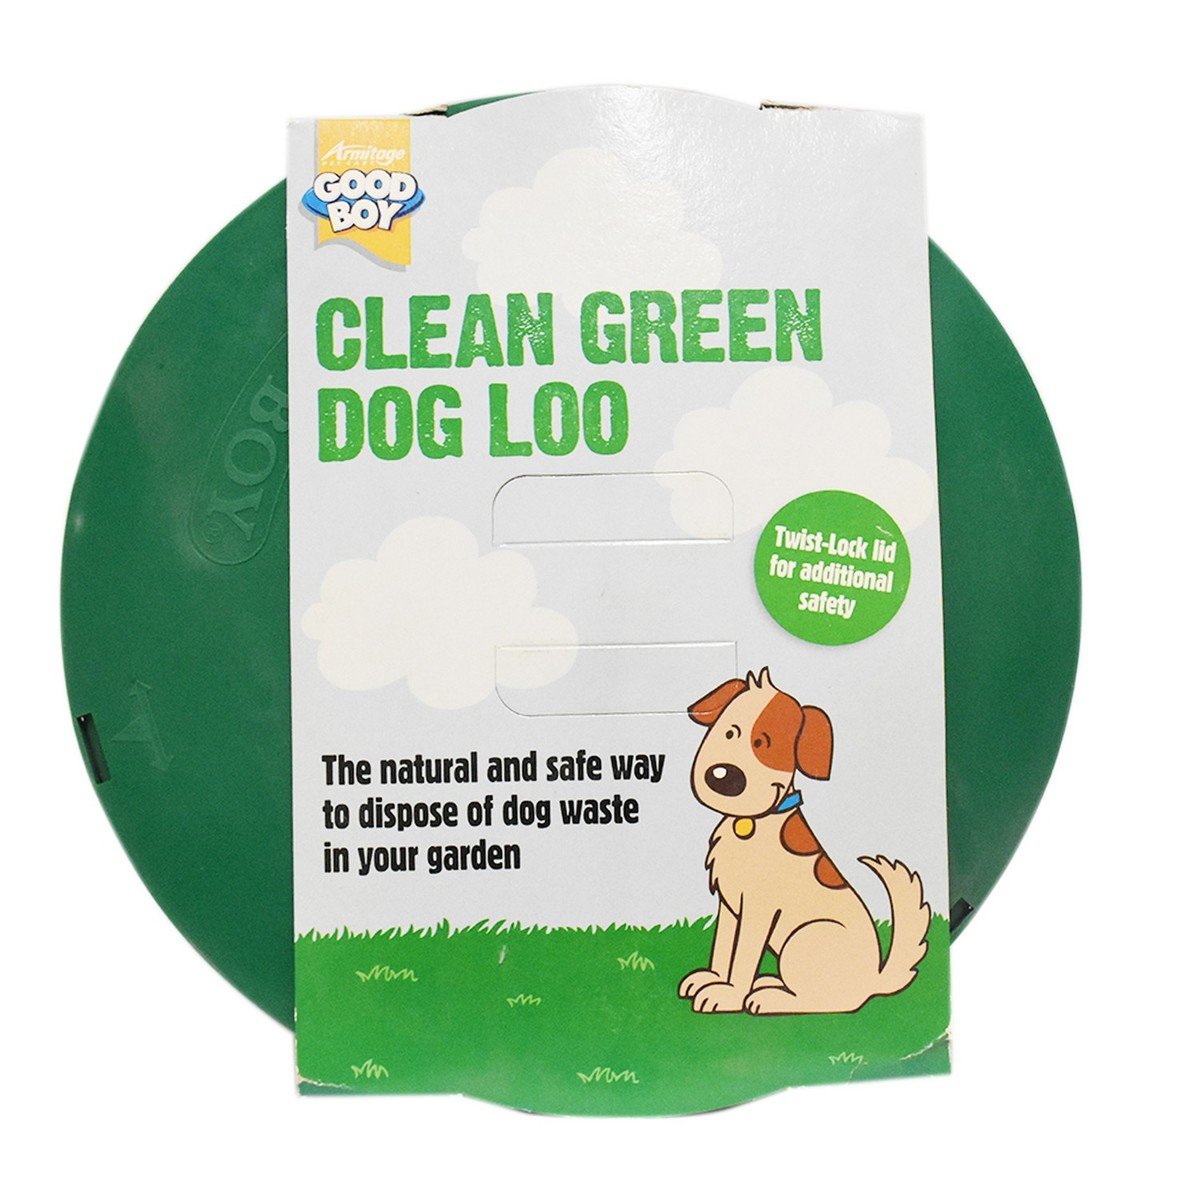 Armitage Good Boy Clean Green Dog Loo 1pc